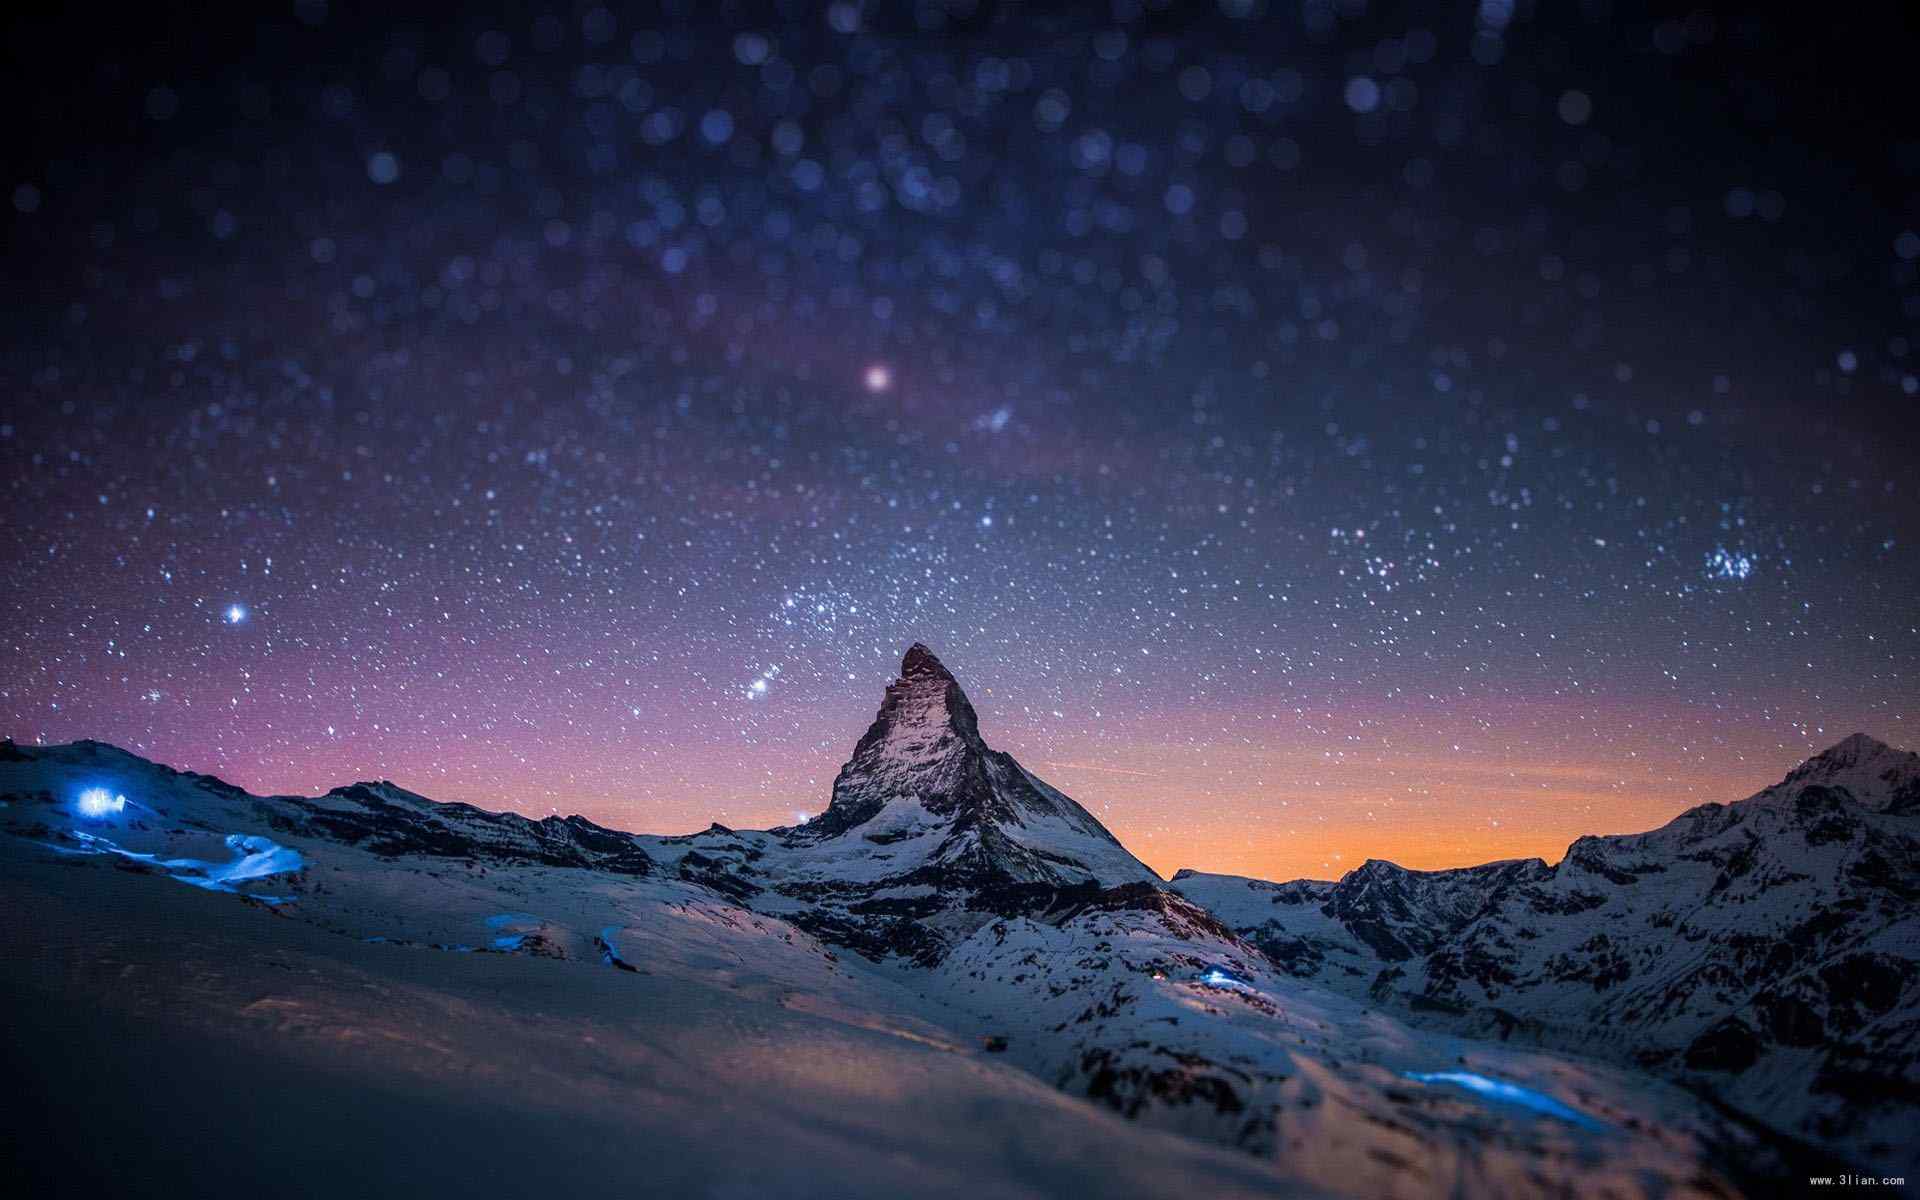 阿尔卑斯山脉炫酷夜景图片桌面壁纸